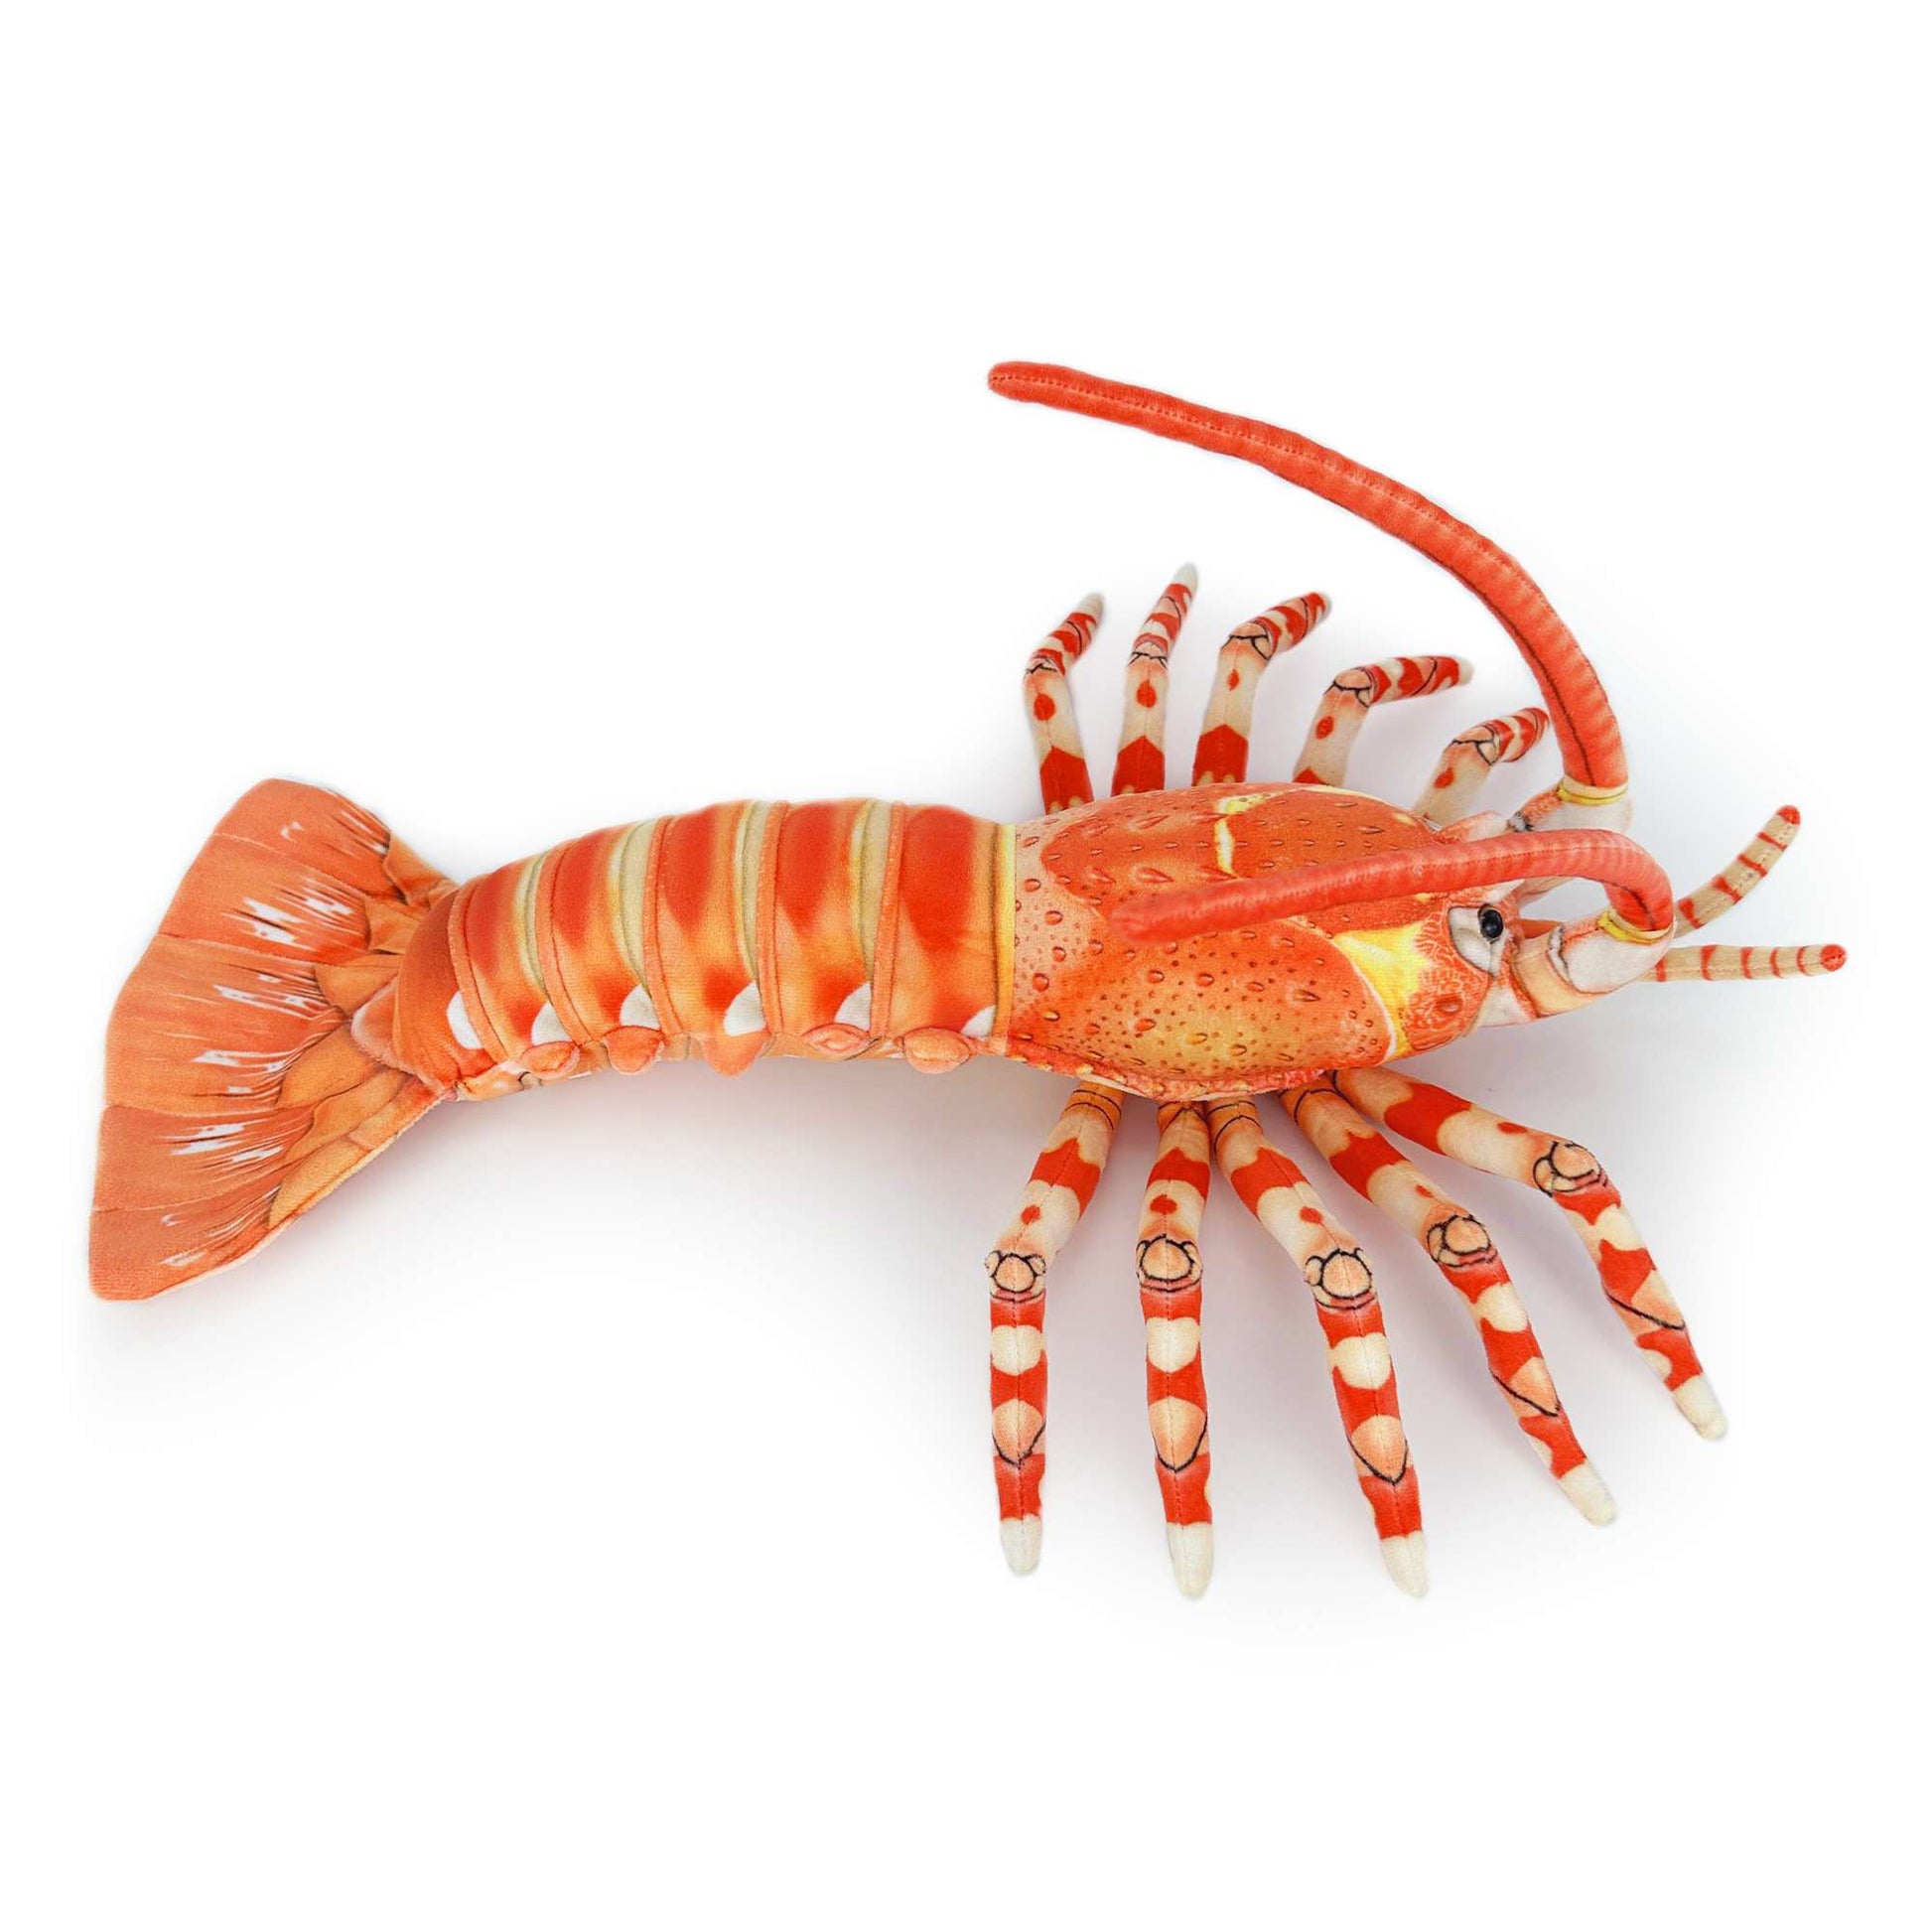 southern rock lobster Jasus edwardsii Australian rock lobster